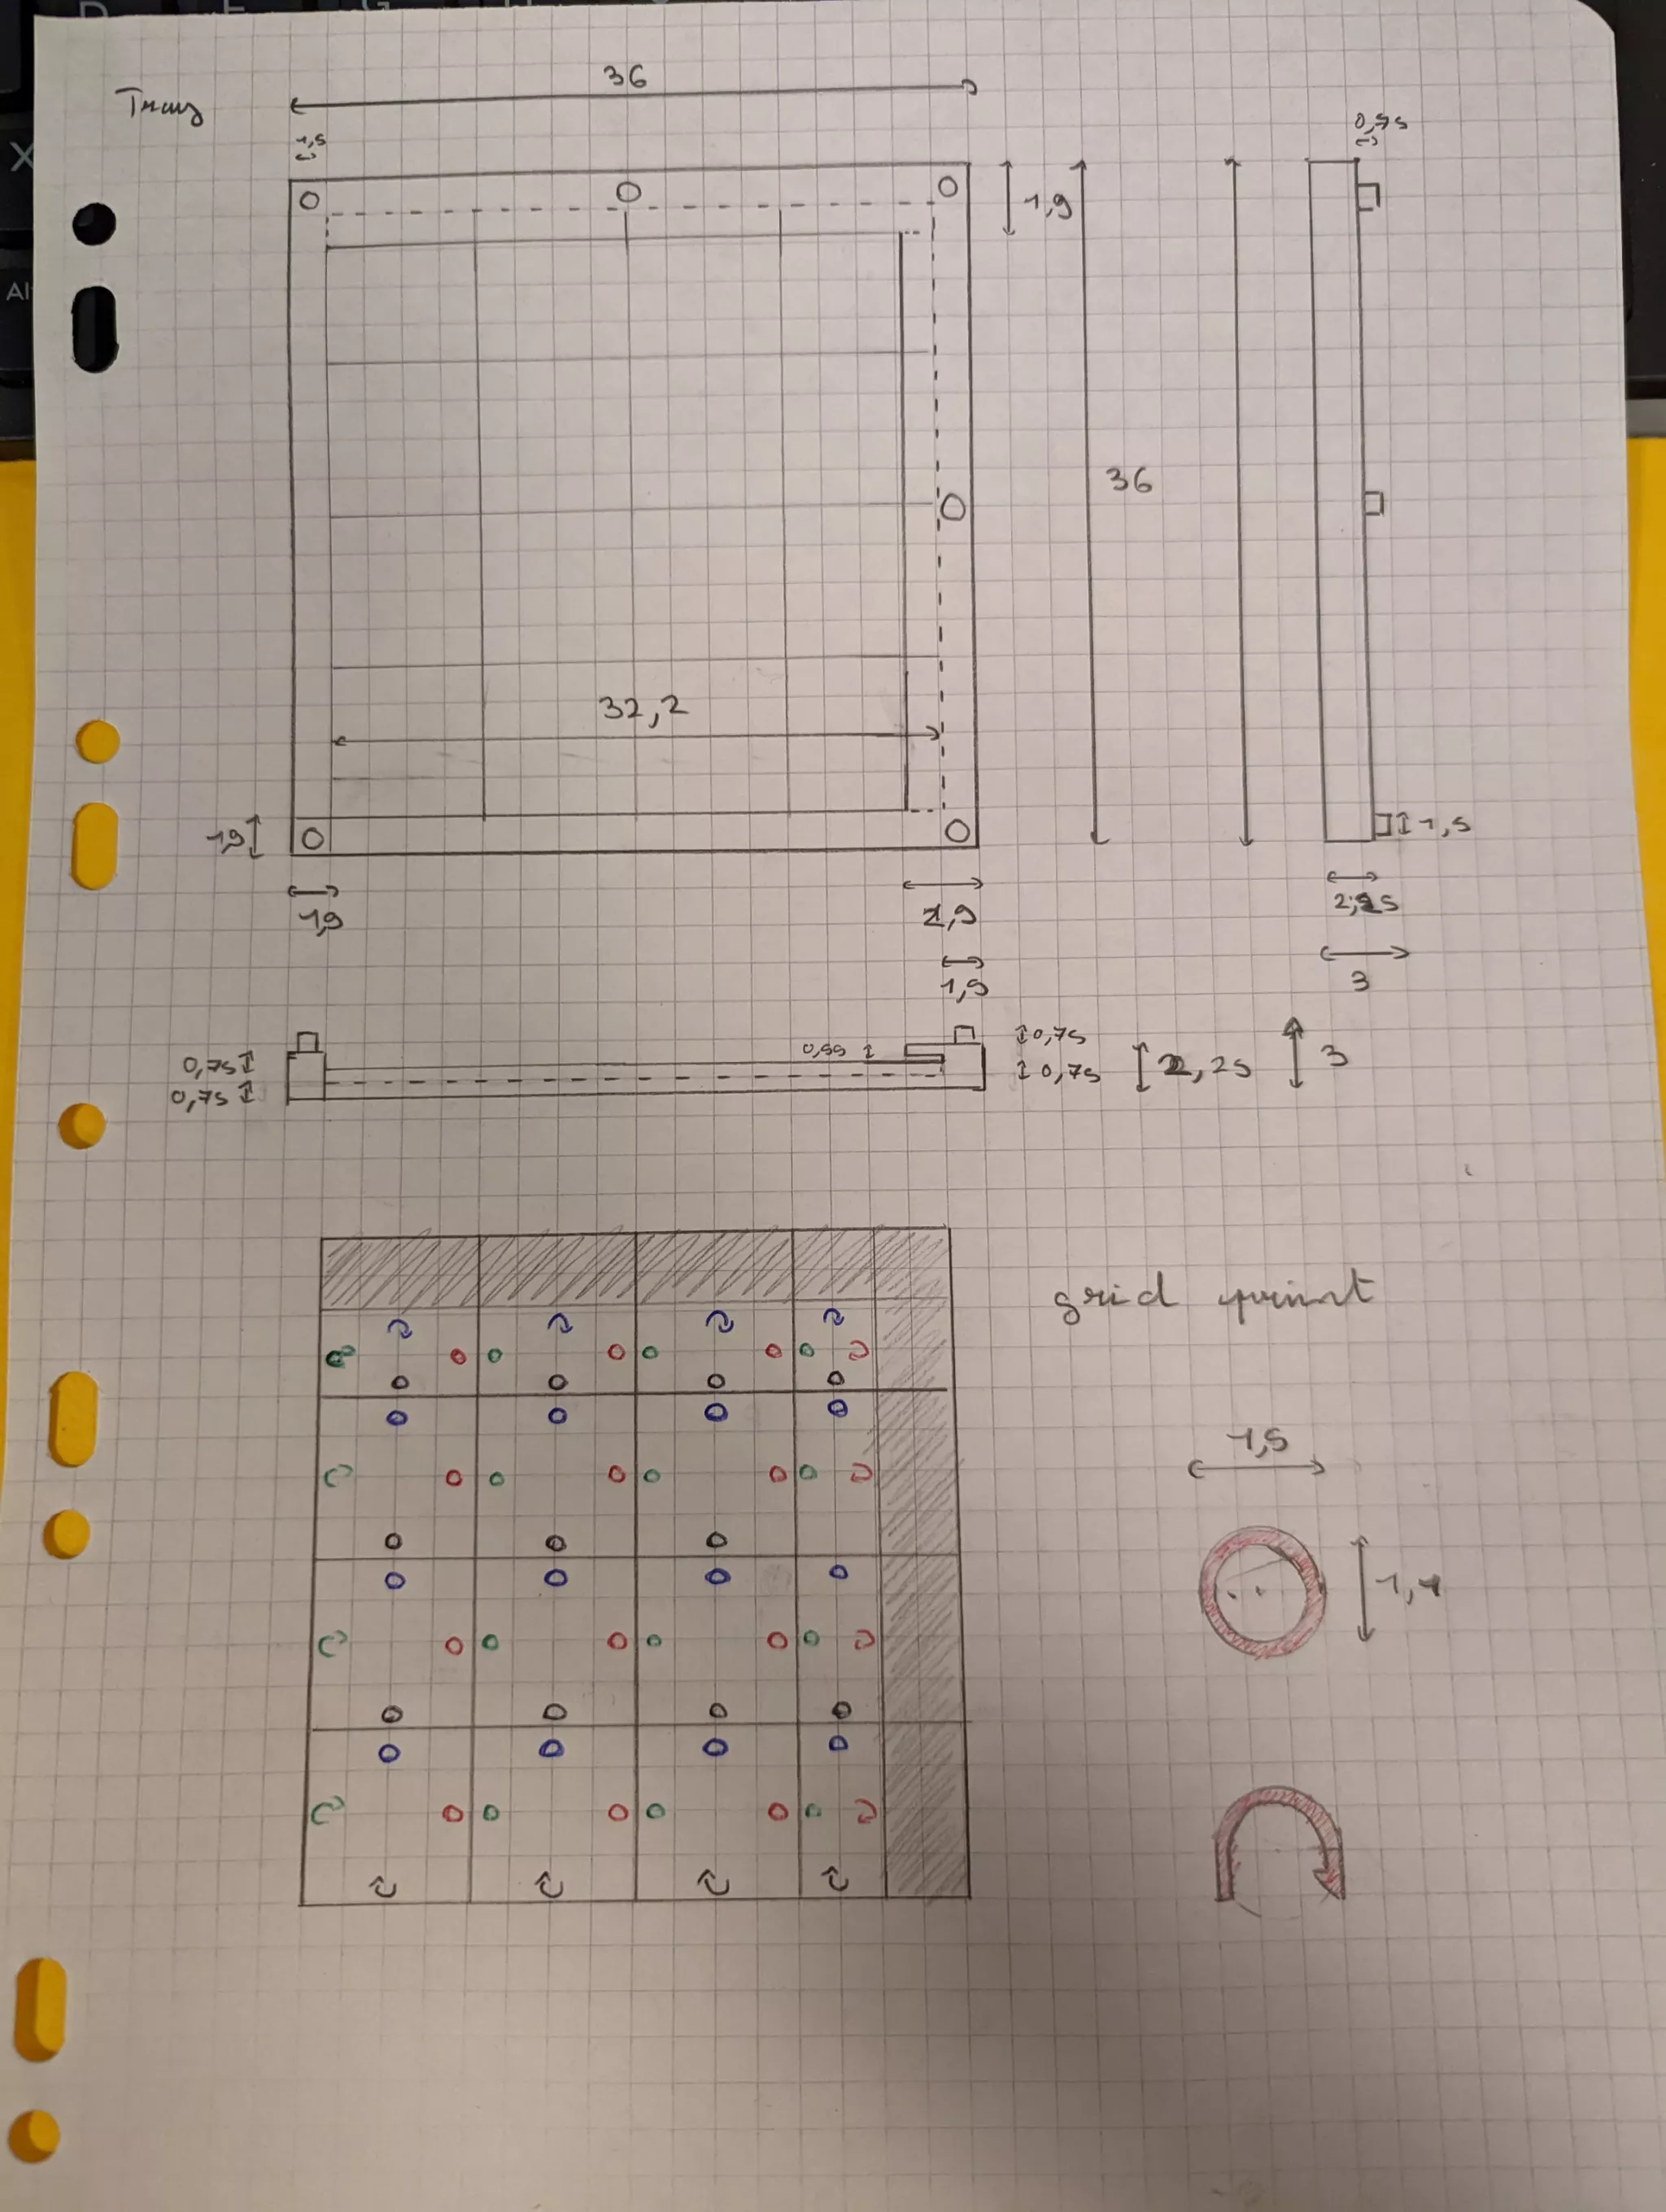 3.1 blueprint tray